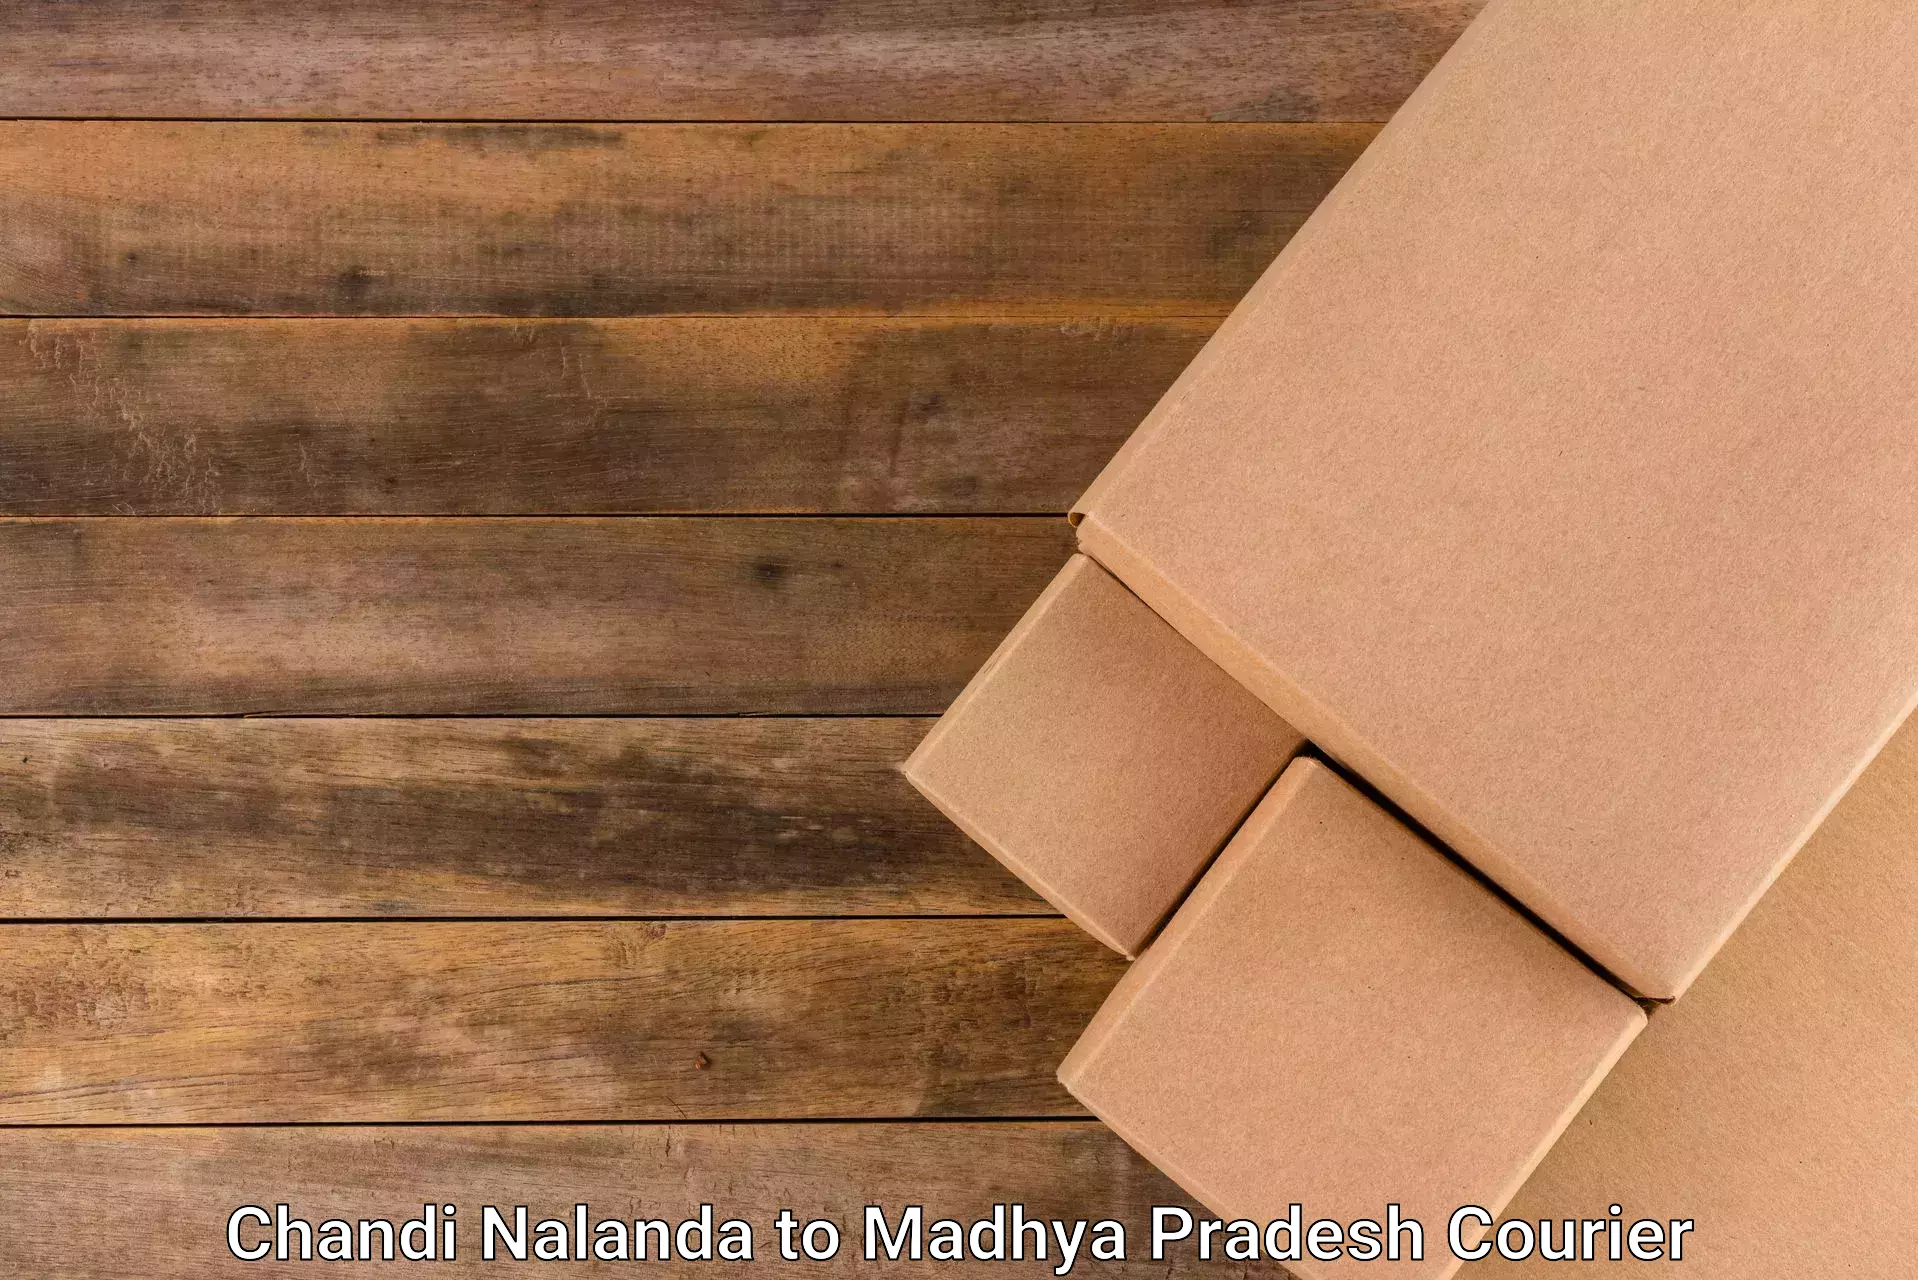 High value parcel delivery Chandi Nalanda to Dewas